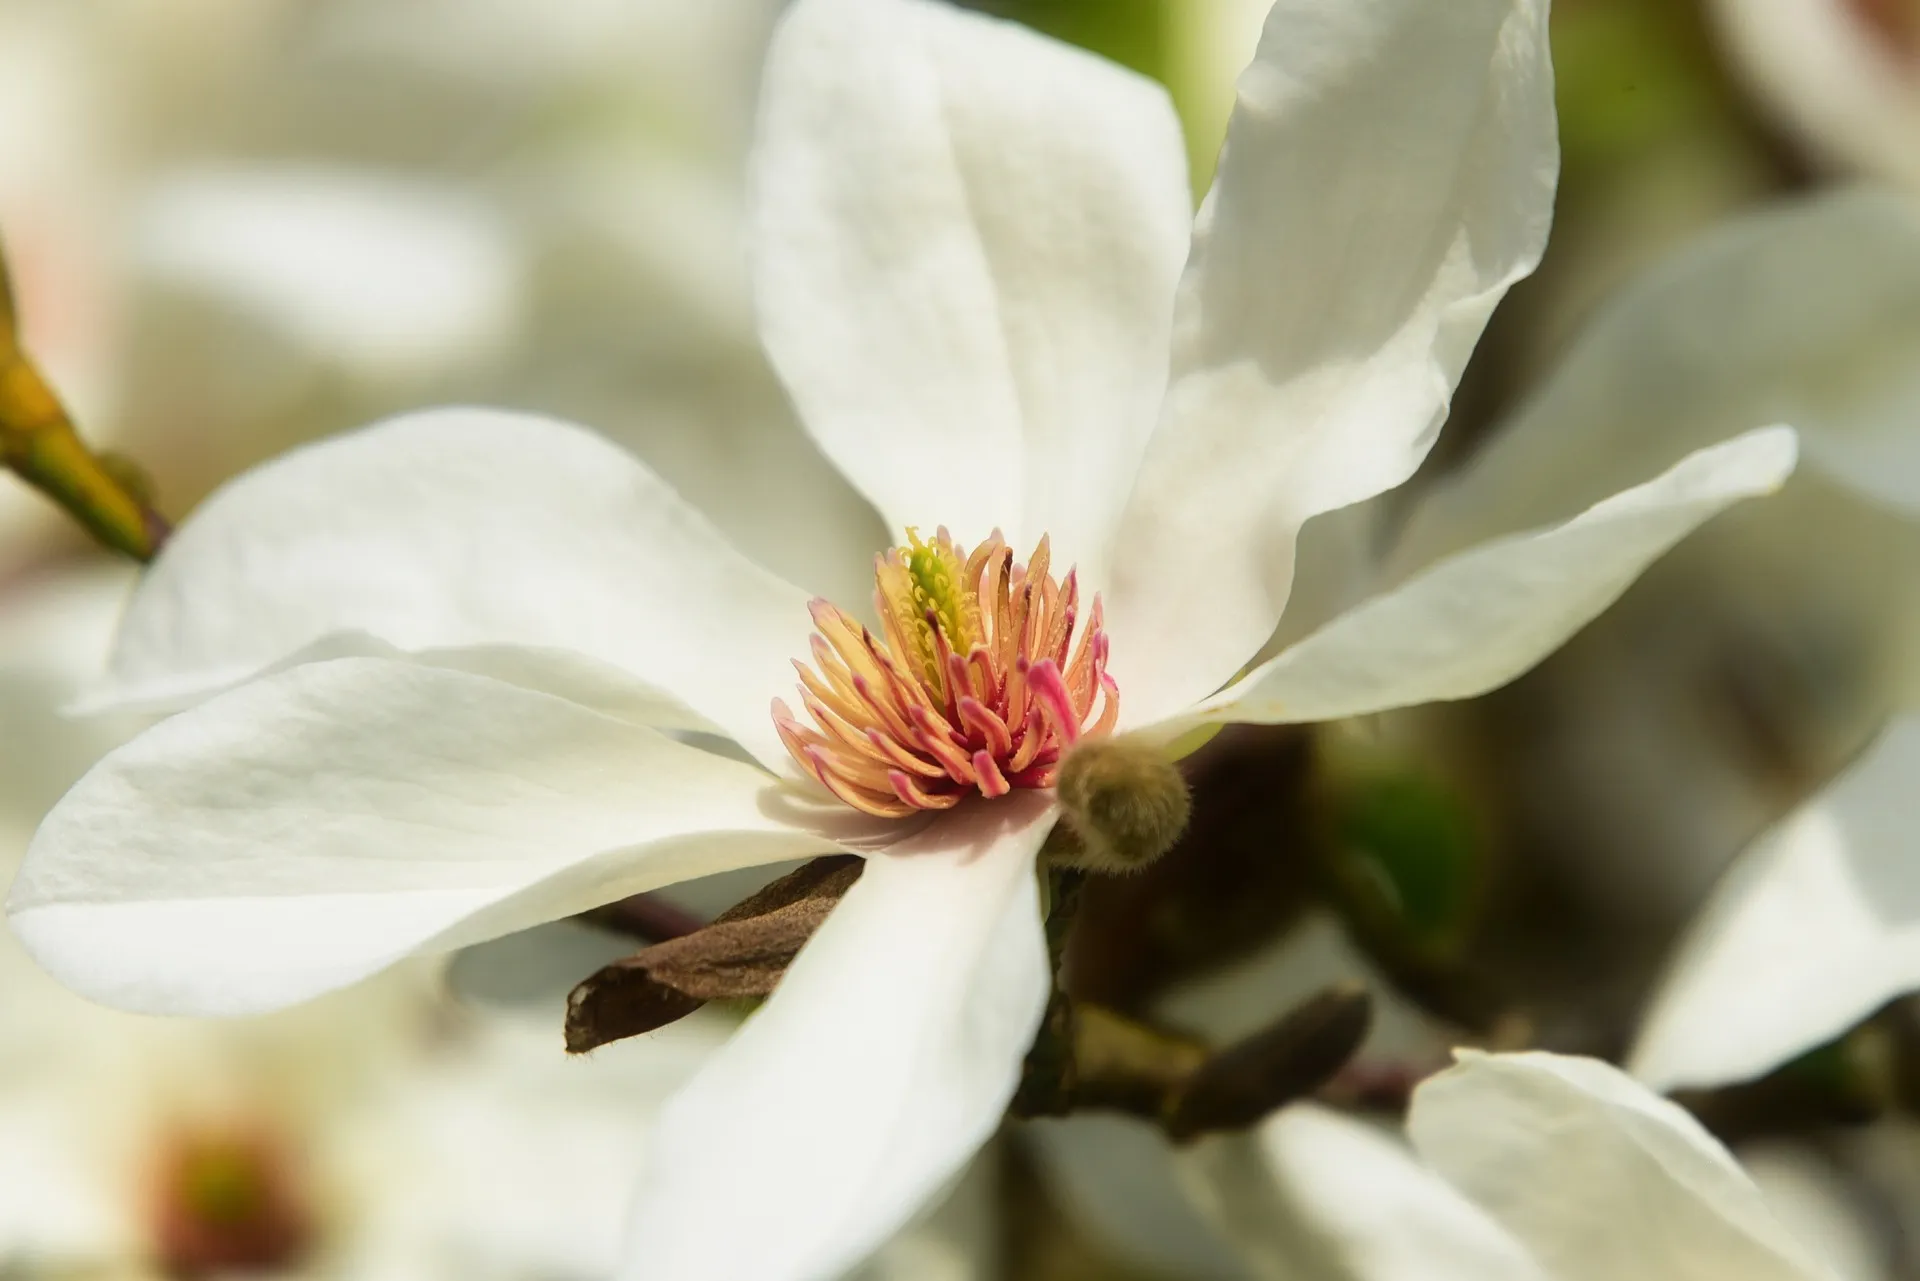 辛夷（こぶし）は、田打ち桜とも呼ばれます。白く大きな辛夷の花が咲く時期に、田植えに備えた土掘り作業を始めるためです。